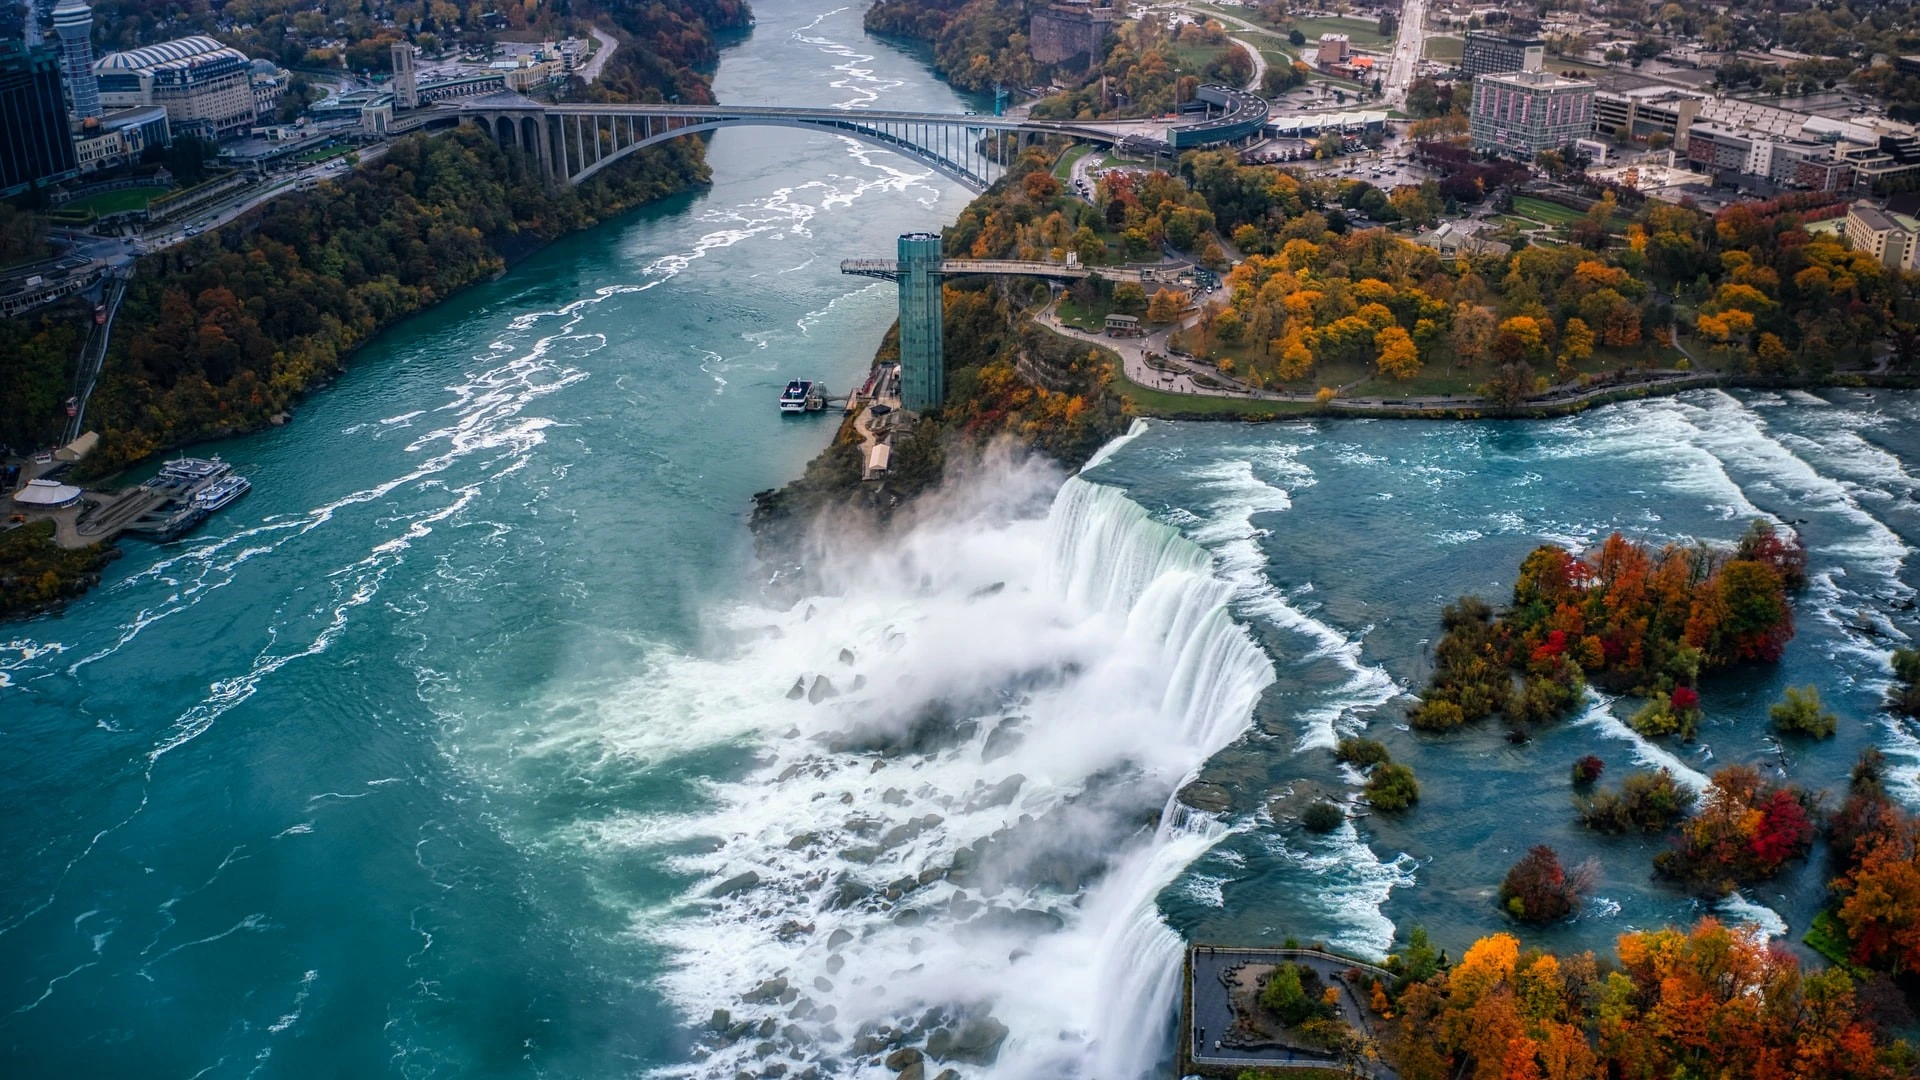 Bird's eye view of Niagara Falls